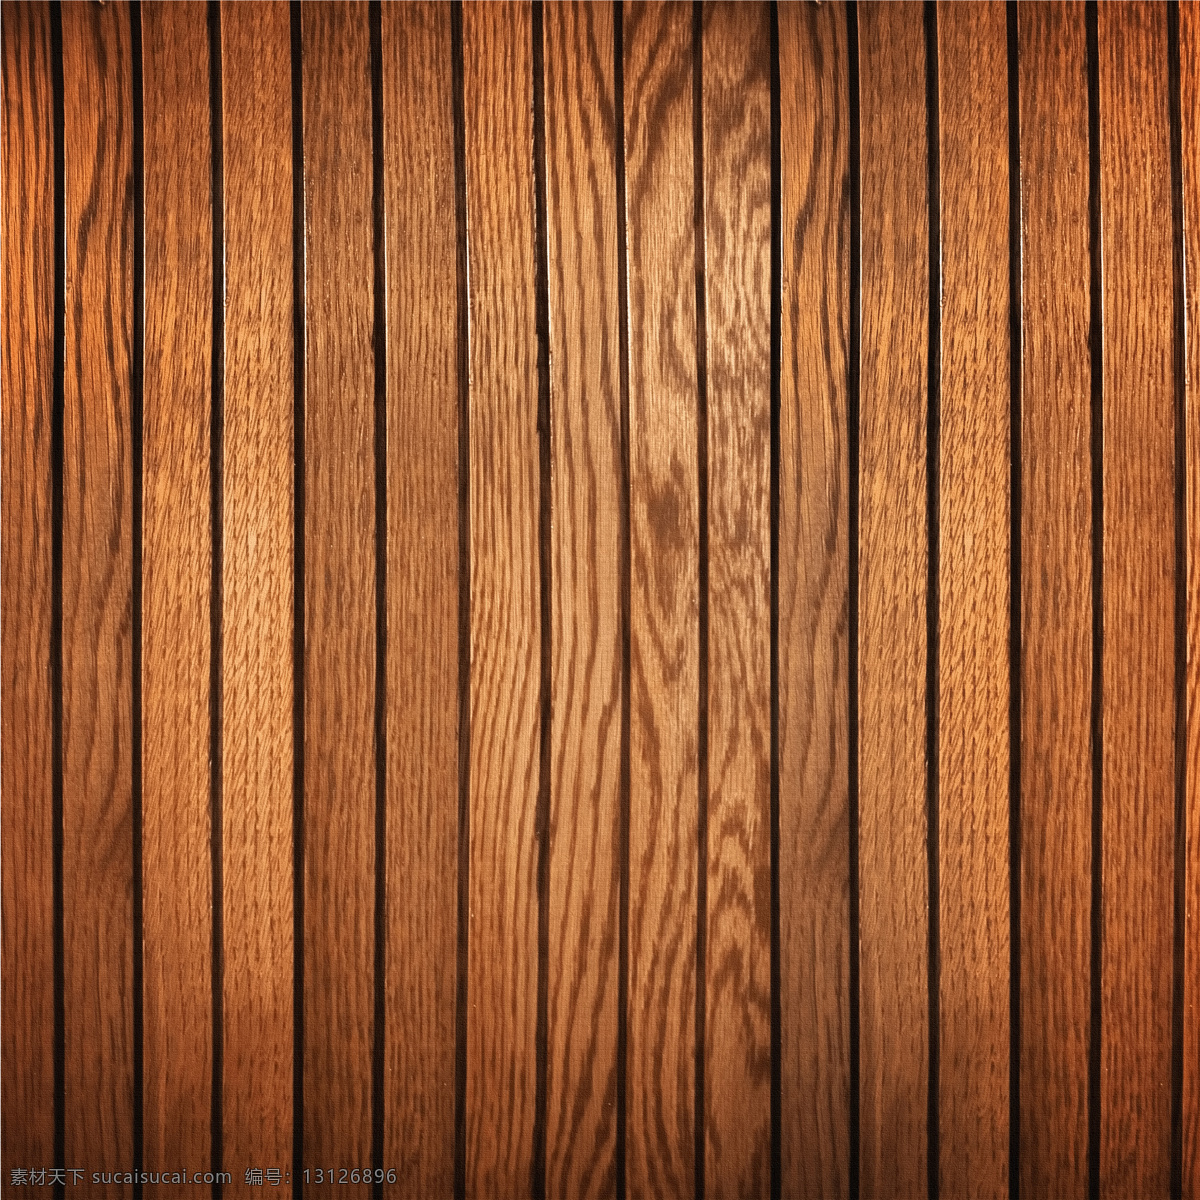 排列 整齐 窄 木板 条 高清 摄 大图 木纹 木质 材质 贴图 纹路 木板条 棕色